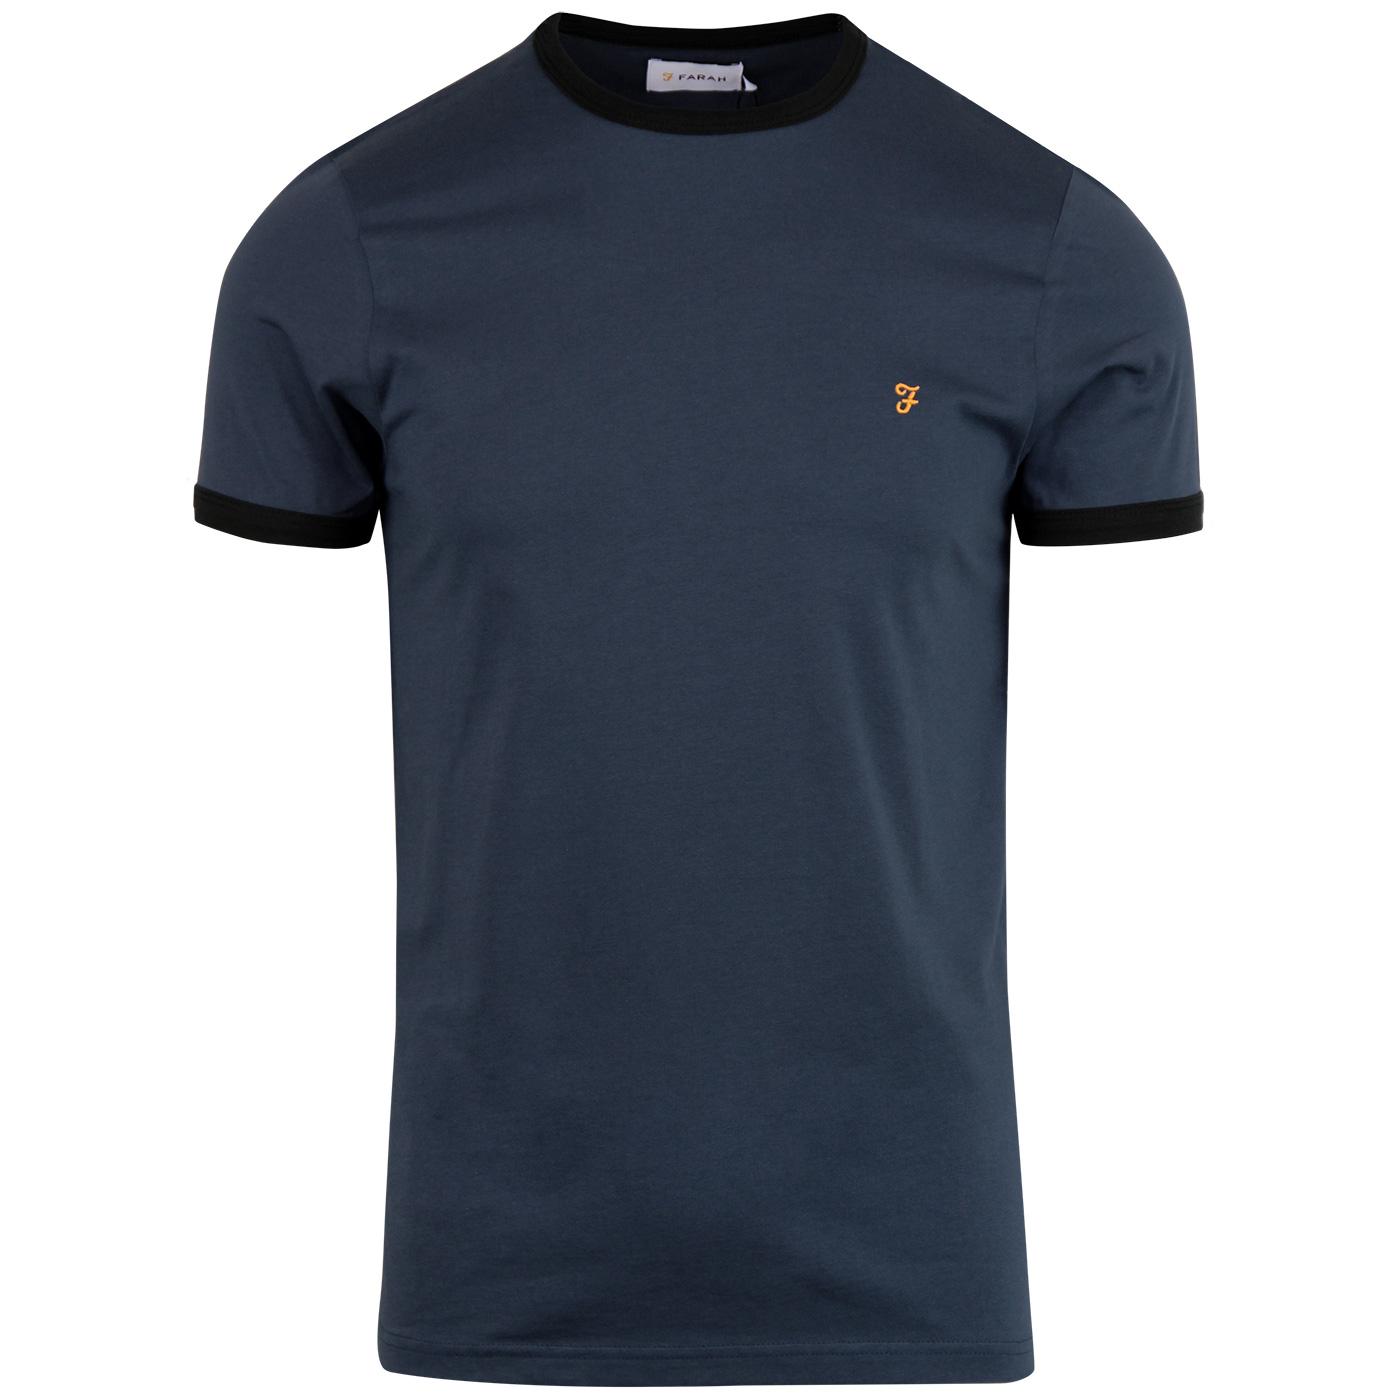 FARAH Groves Men's Retro Mod Ringer T-shirt in Bobby Blue